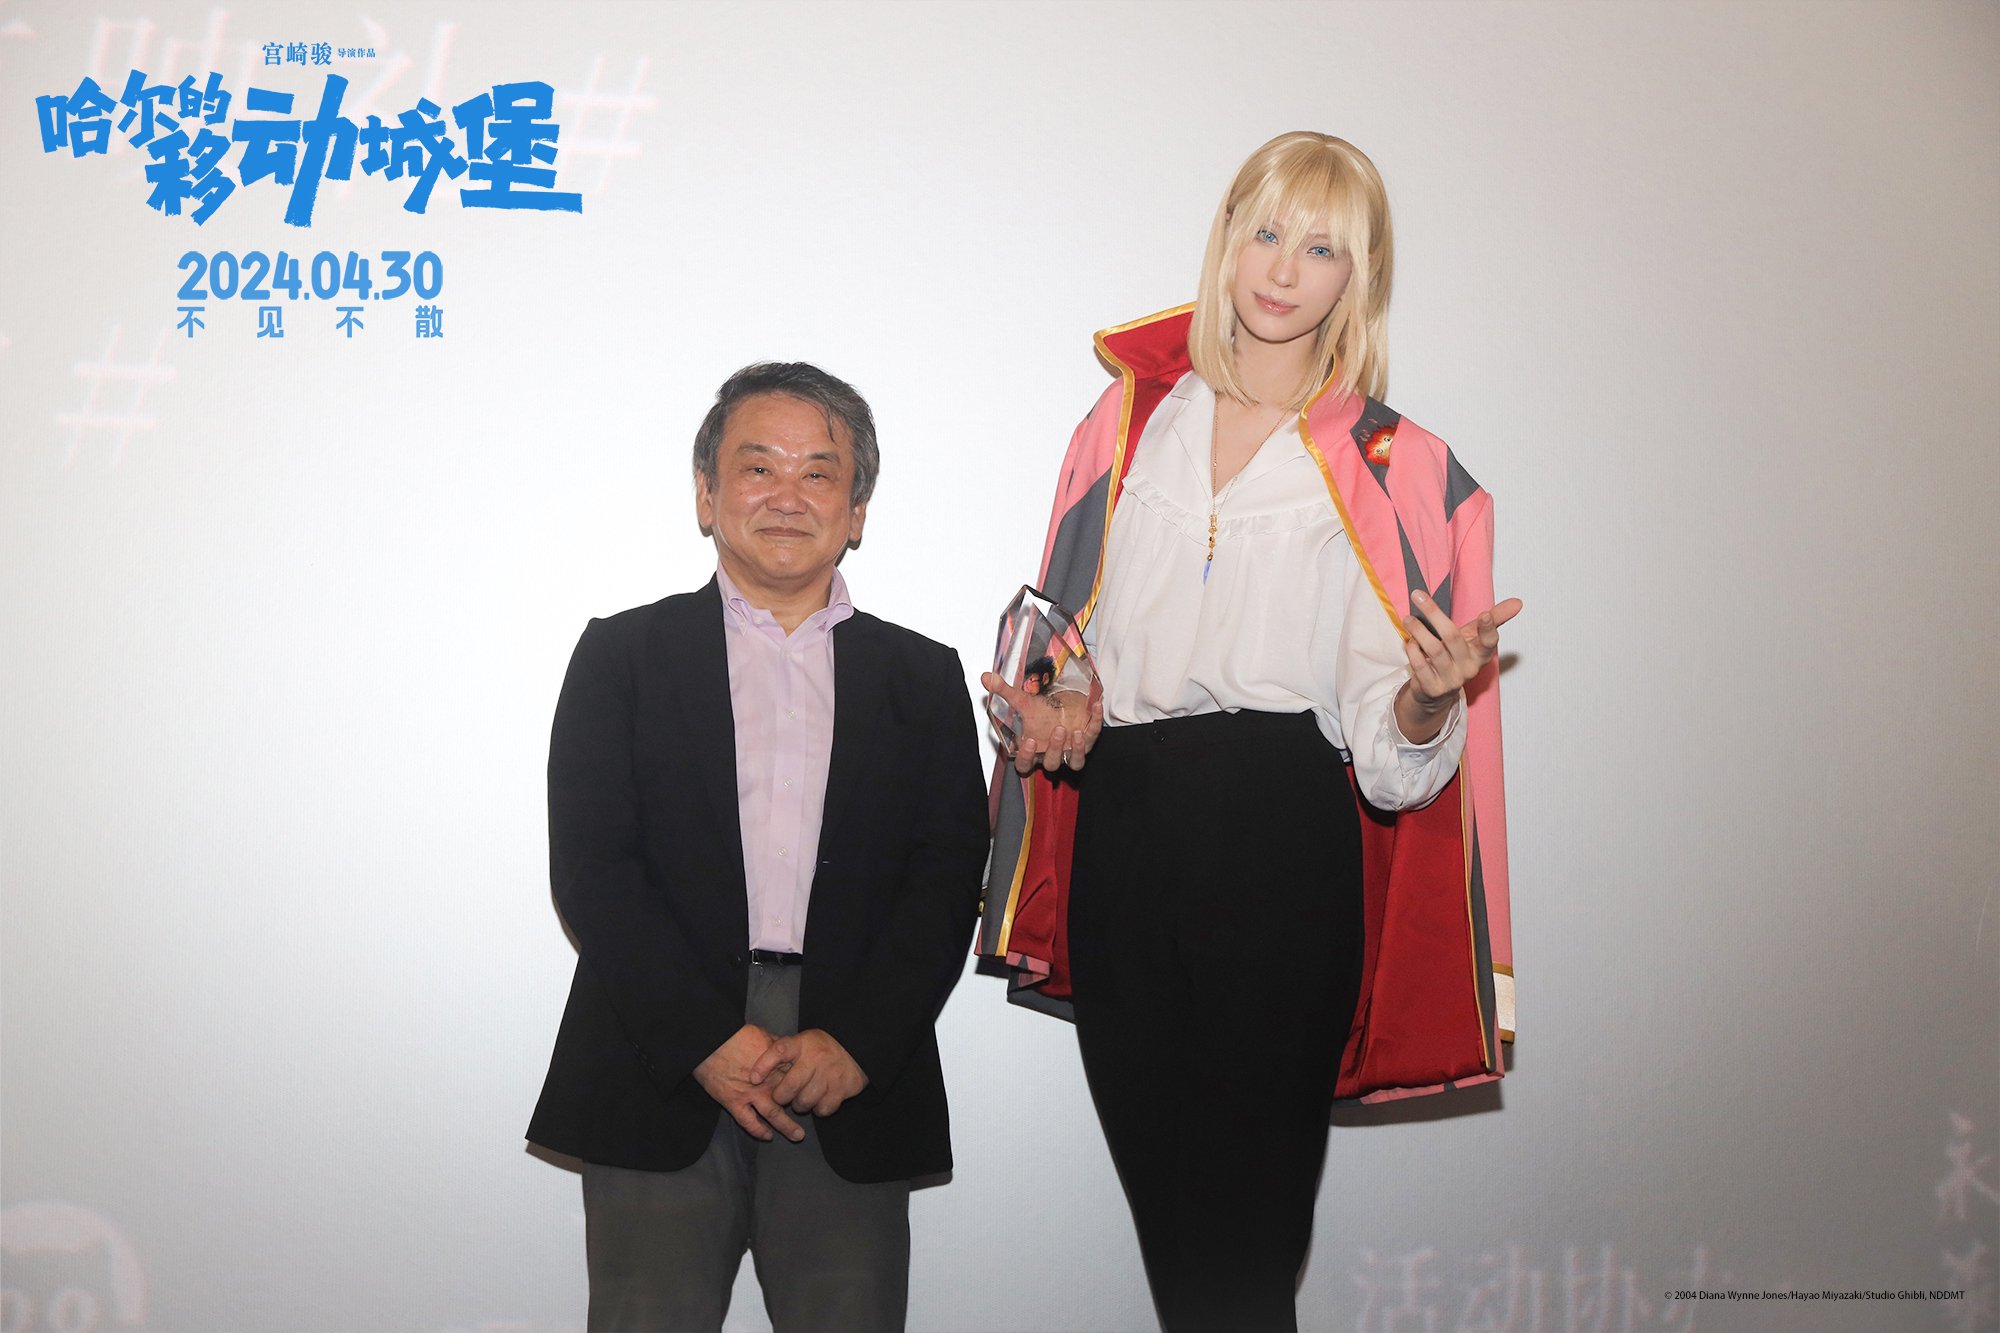 西冈纯一为卡琳娜颁发了“二次元造梦者”的奖杯